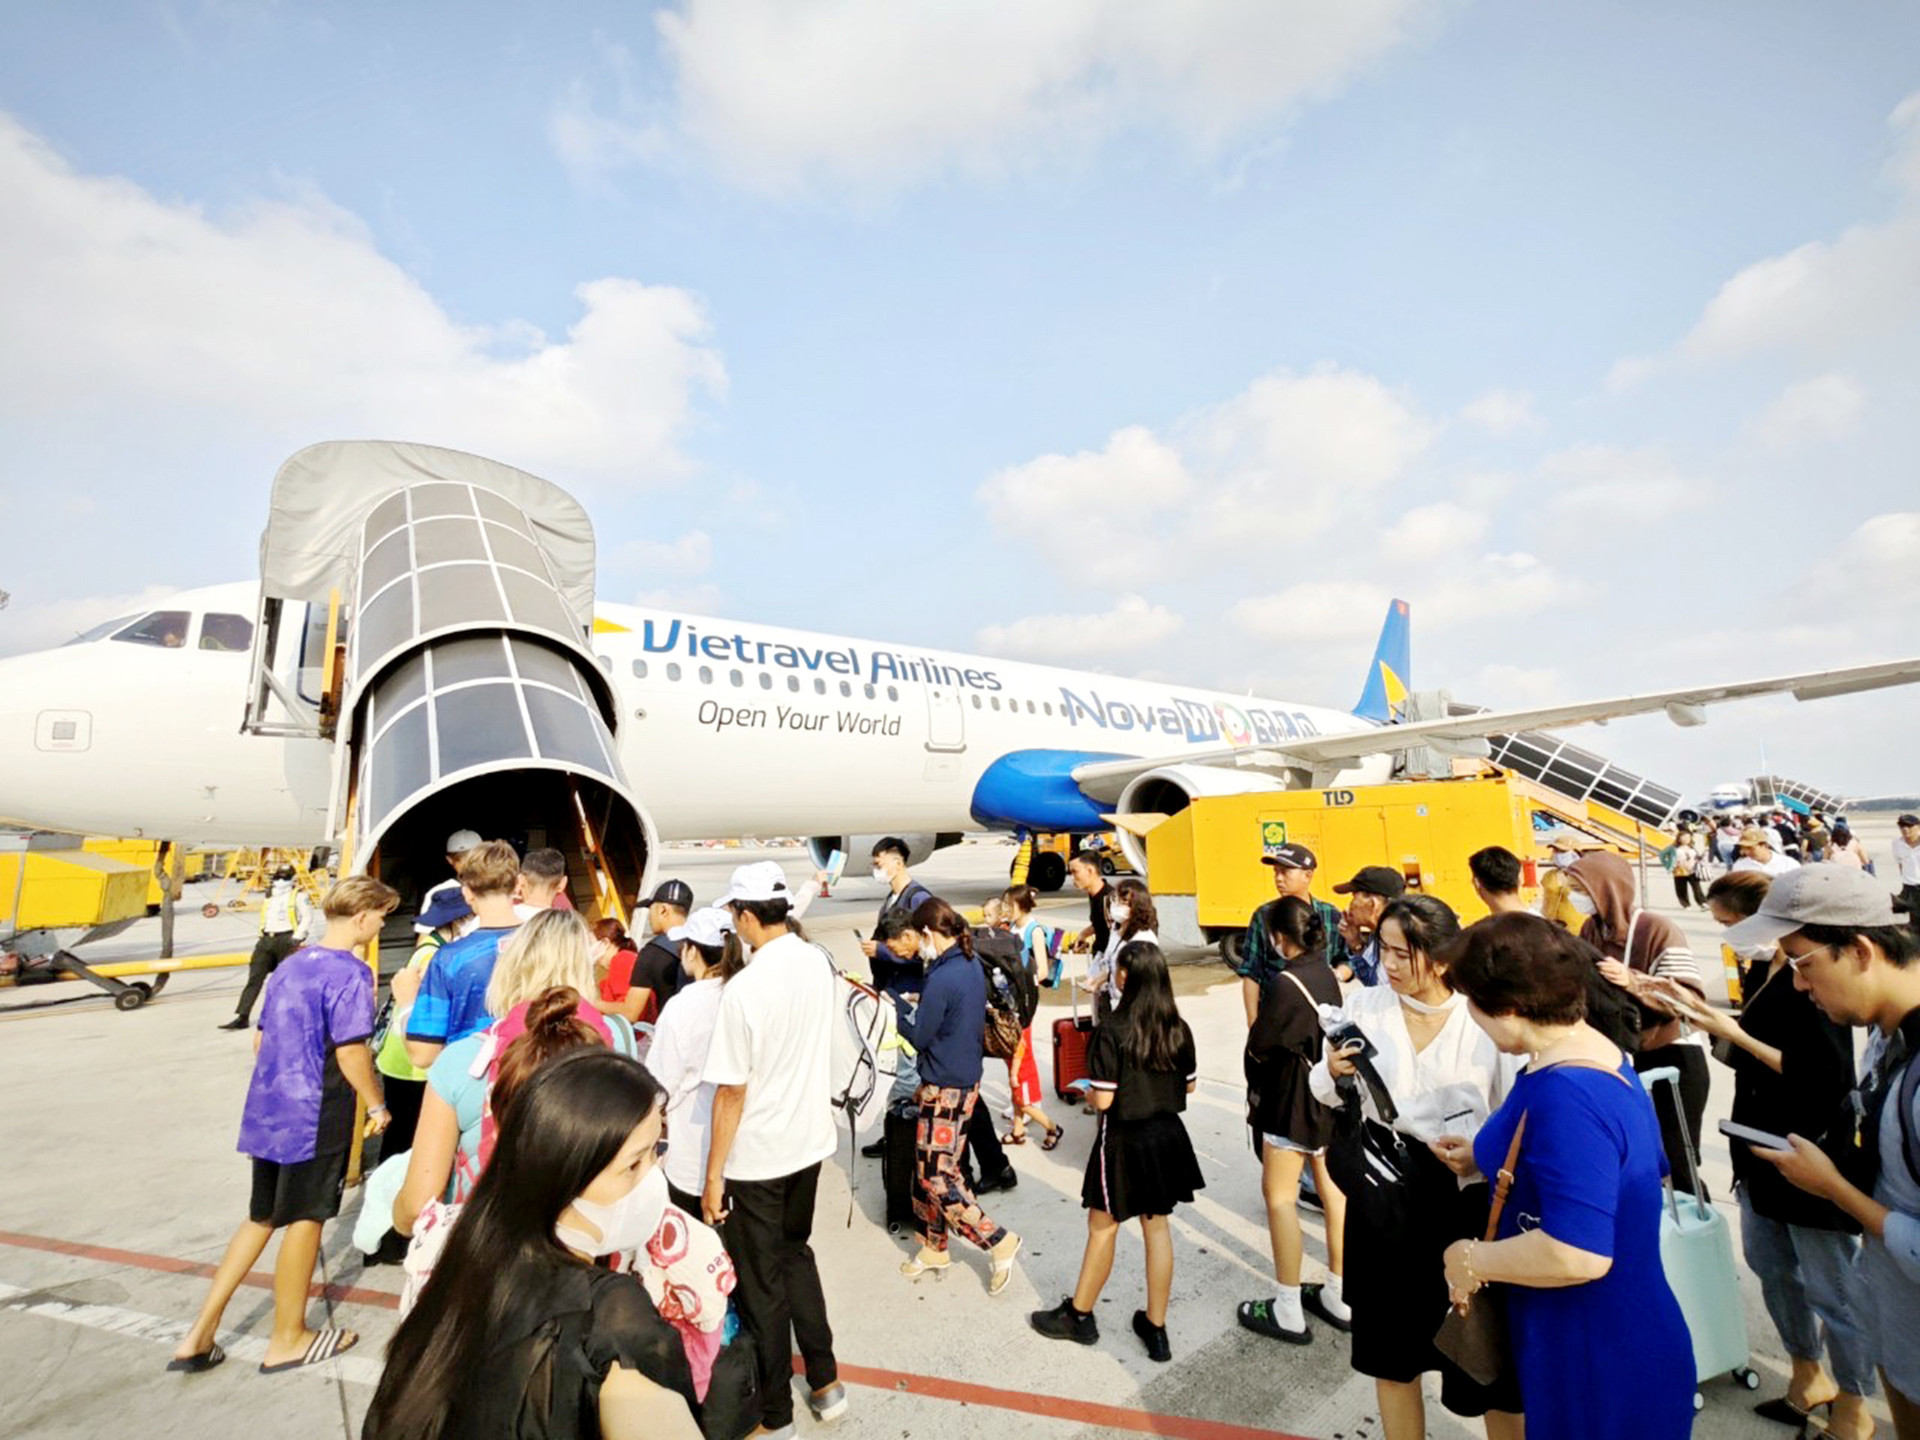 Hành khách đi lại máy bay dịp lễ tăng cao, hàng không vẫn khó giảm giá vé - Ảnh: CÔNG TRUNG